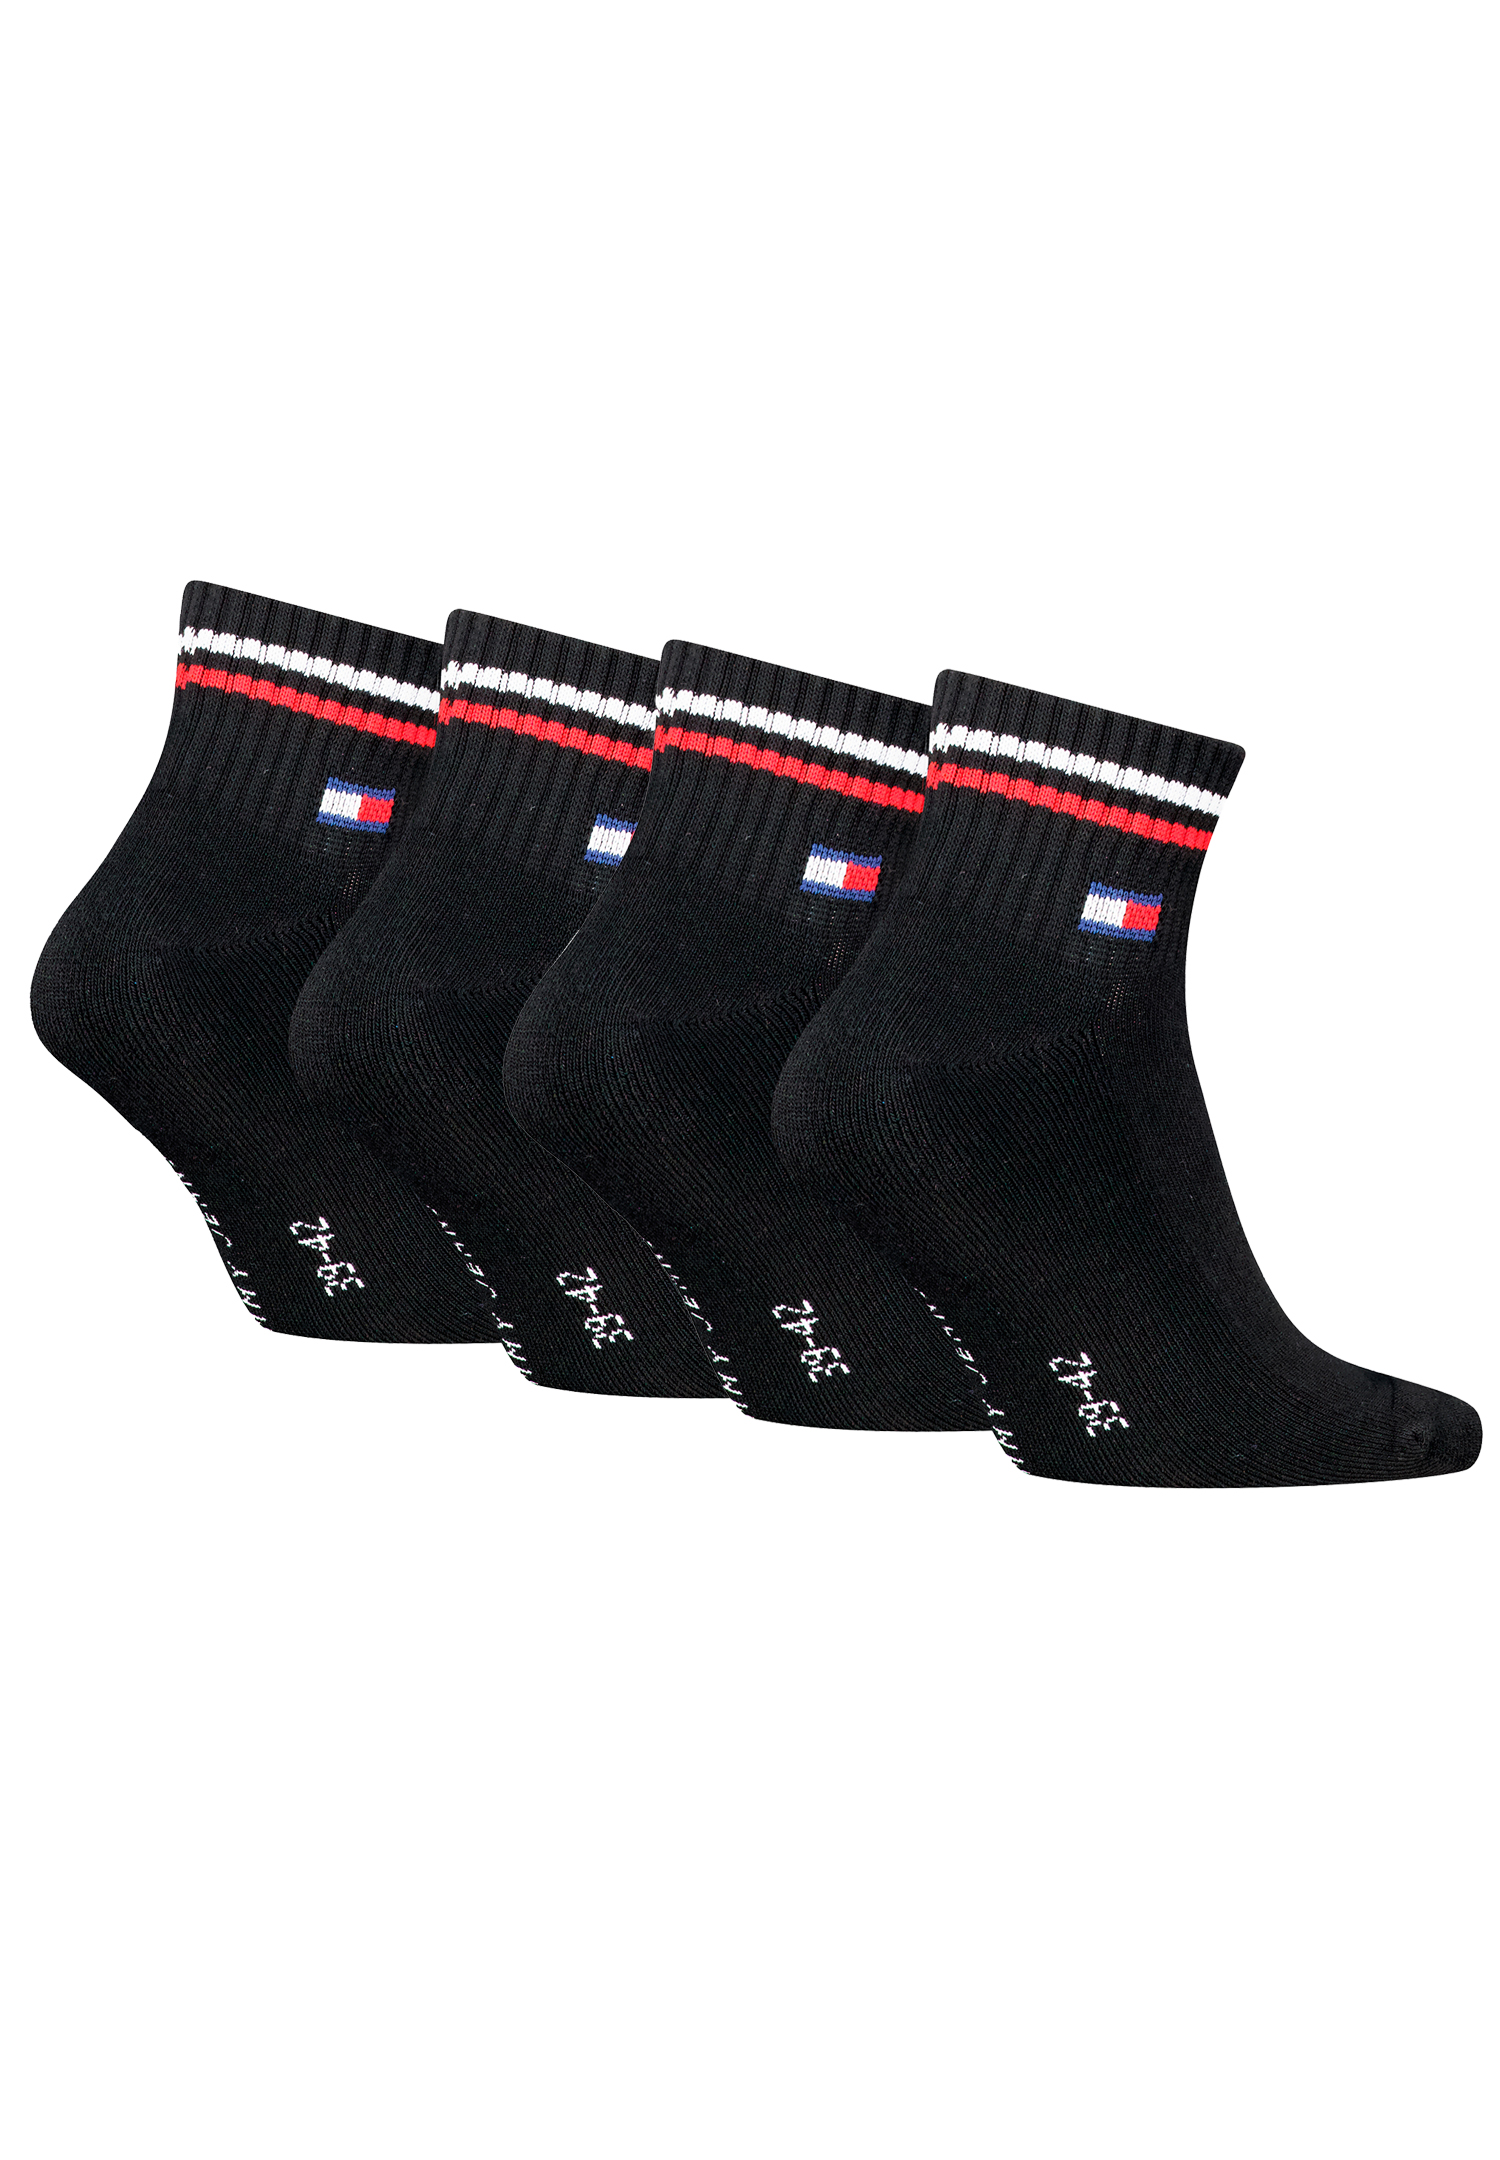 Tommy Hilfiger Unisex Quarter Socken im Retro Design knöchelhoch 4-er Pack